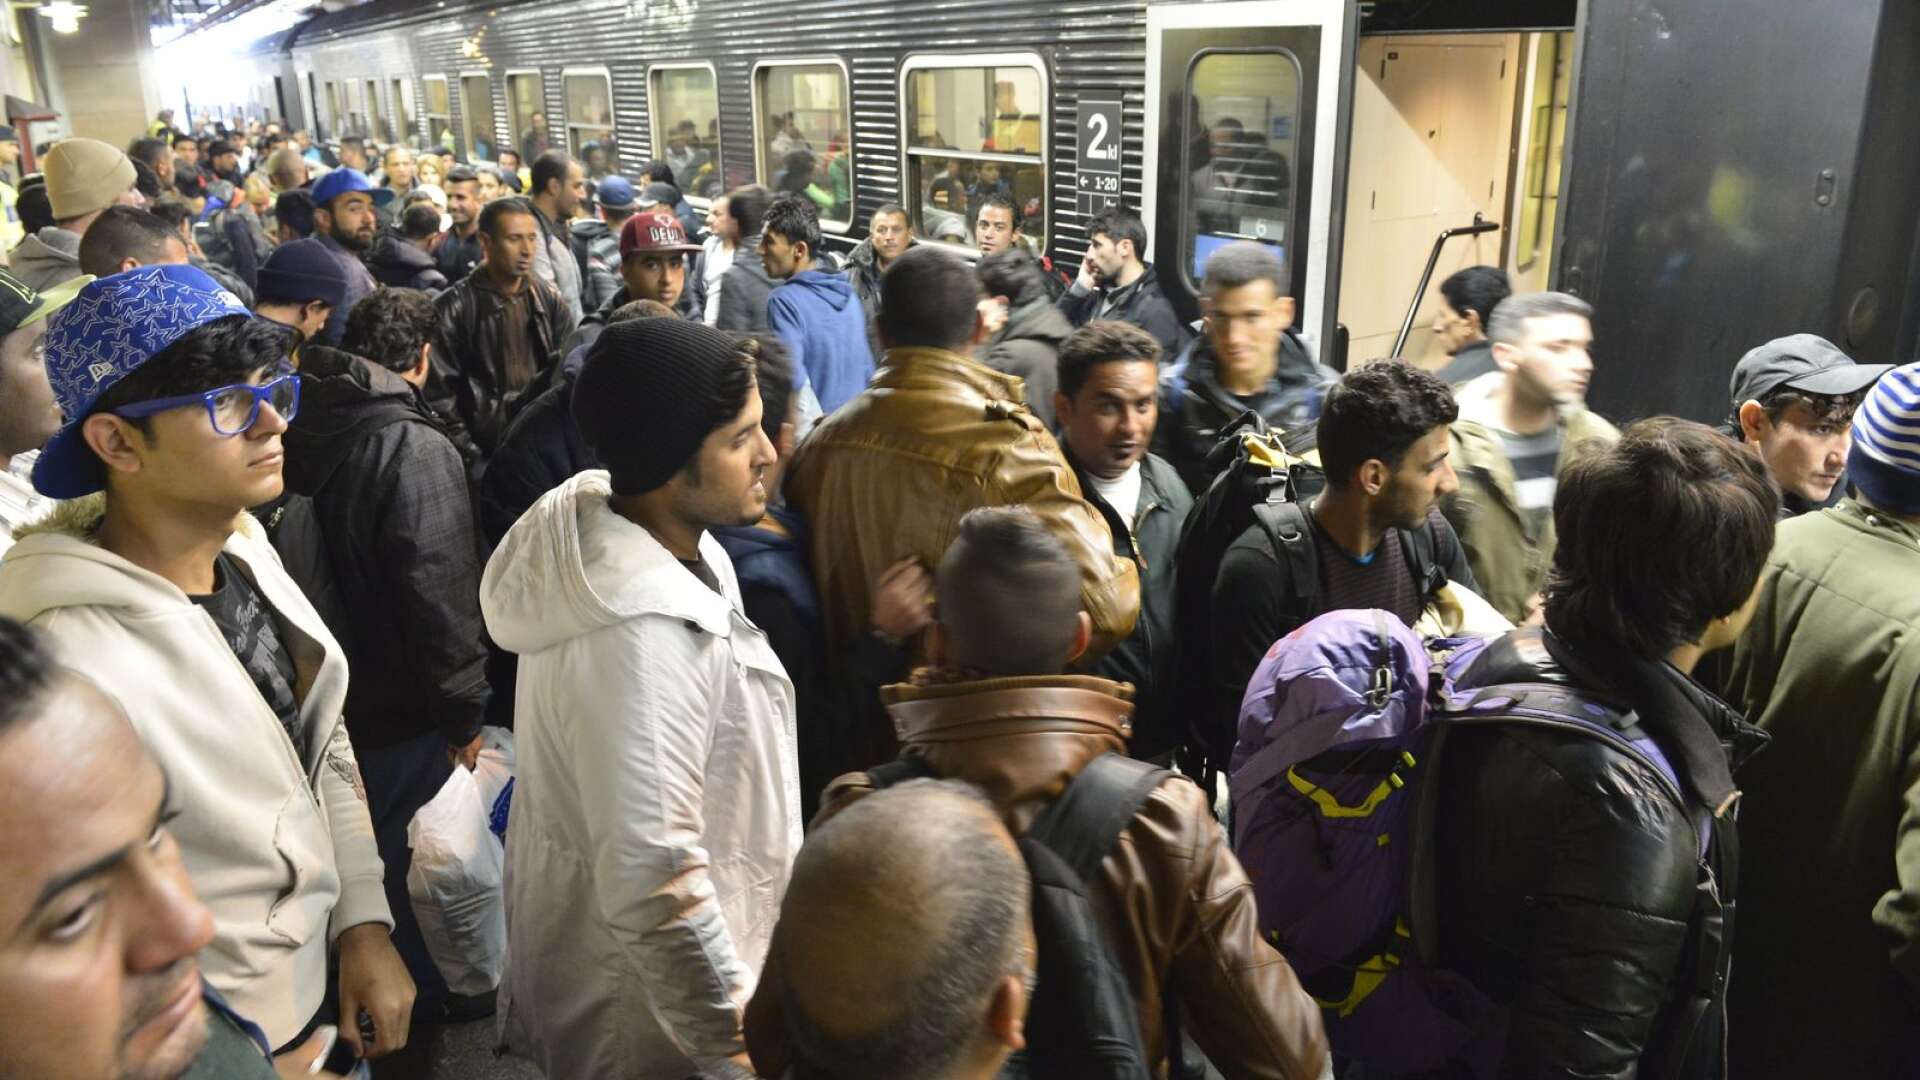 Många migranter har svåra upplevelser med sig i bagaget som behöver berabetas. (Bilden tagen 2015 då många flyktingar kom till Sverige)